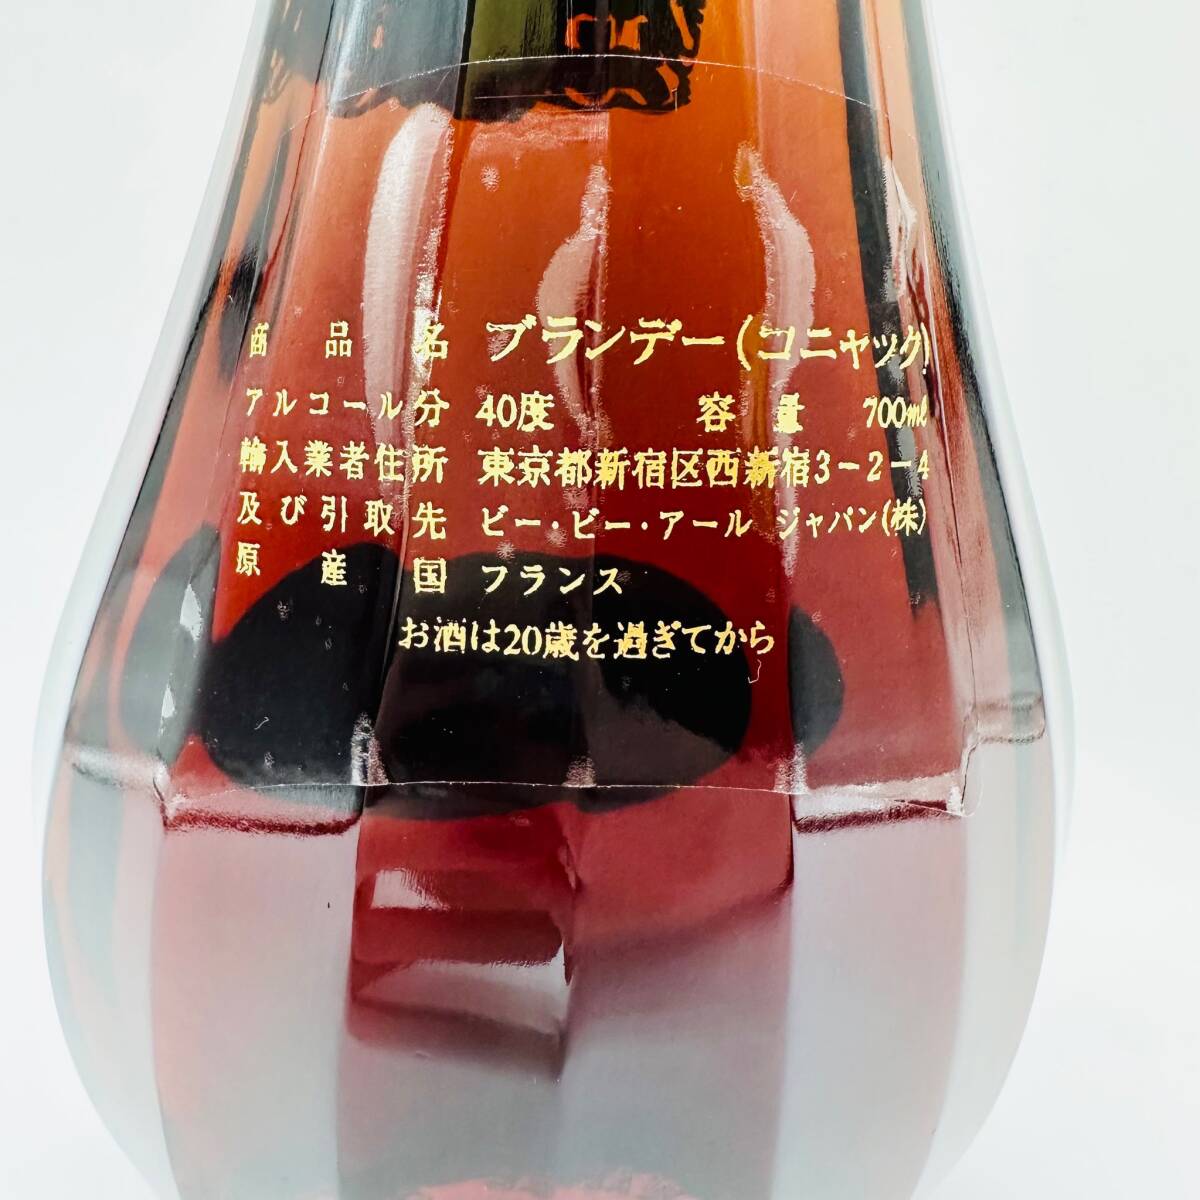  не . штекер Otardo tar XO GOLD алкоголь 40% старый sake 700ml с коробкой 1 иен лот хранение товар COGNAC коньяк бренди иностранный алкоголь коллекция 3604